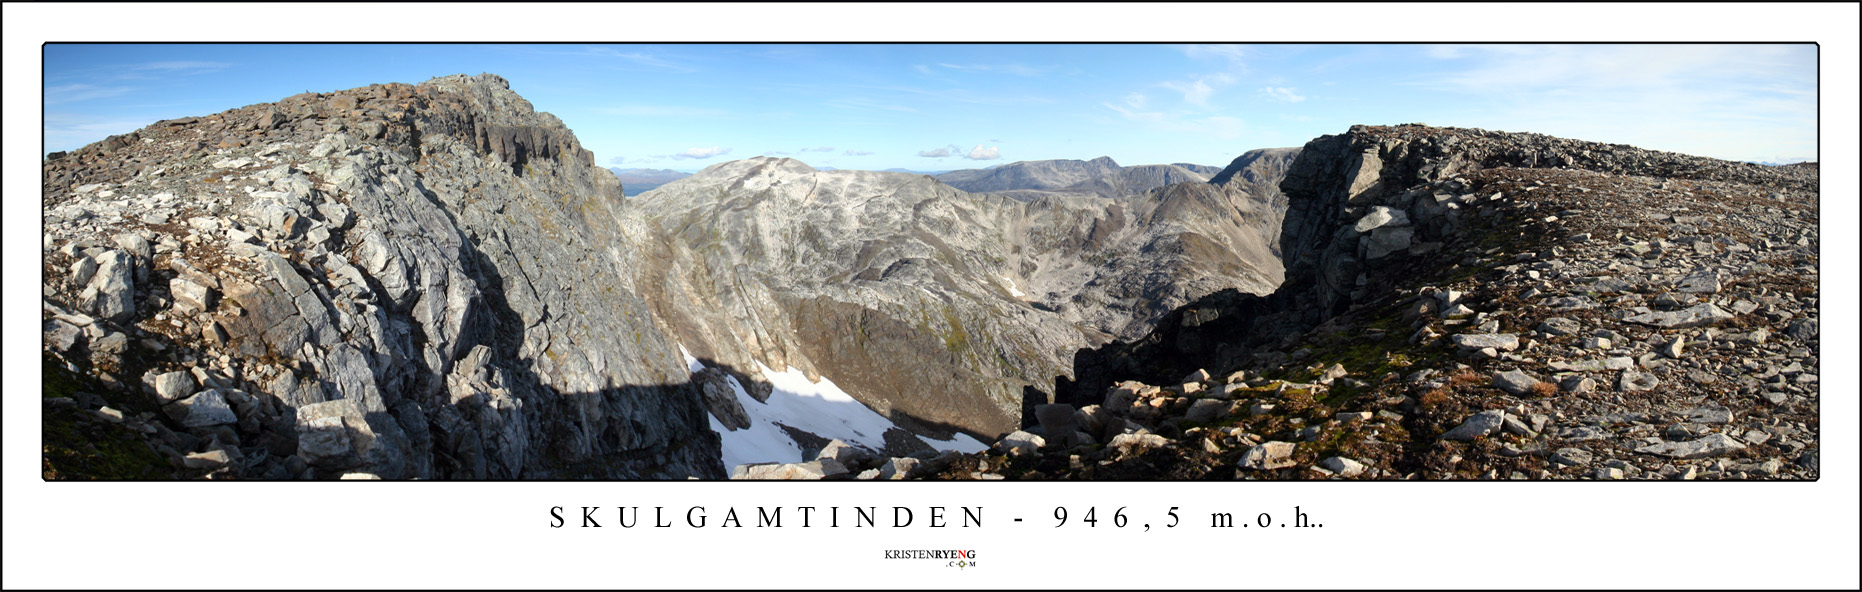 Panorama-Skulgamtinden1.jpg - Skulgamtinden - 946,5moh.